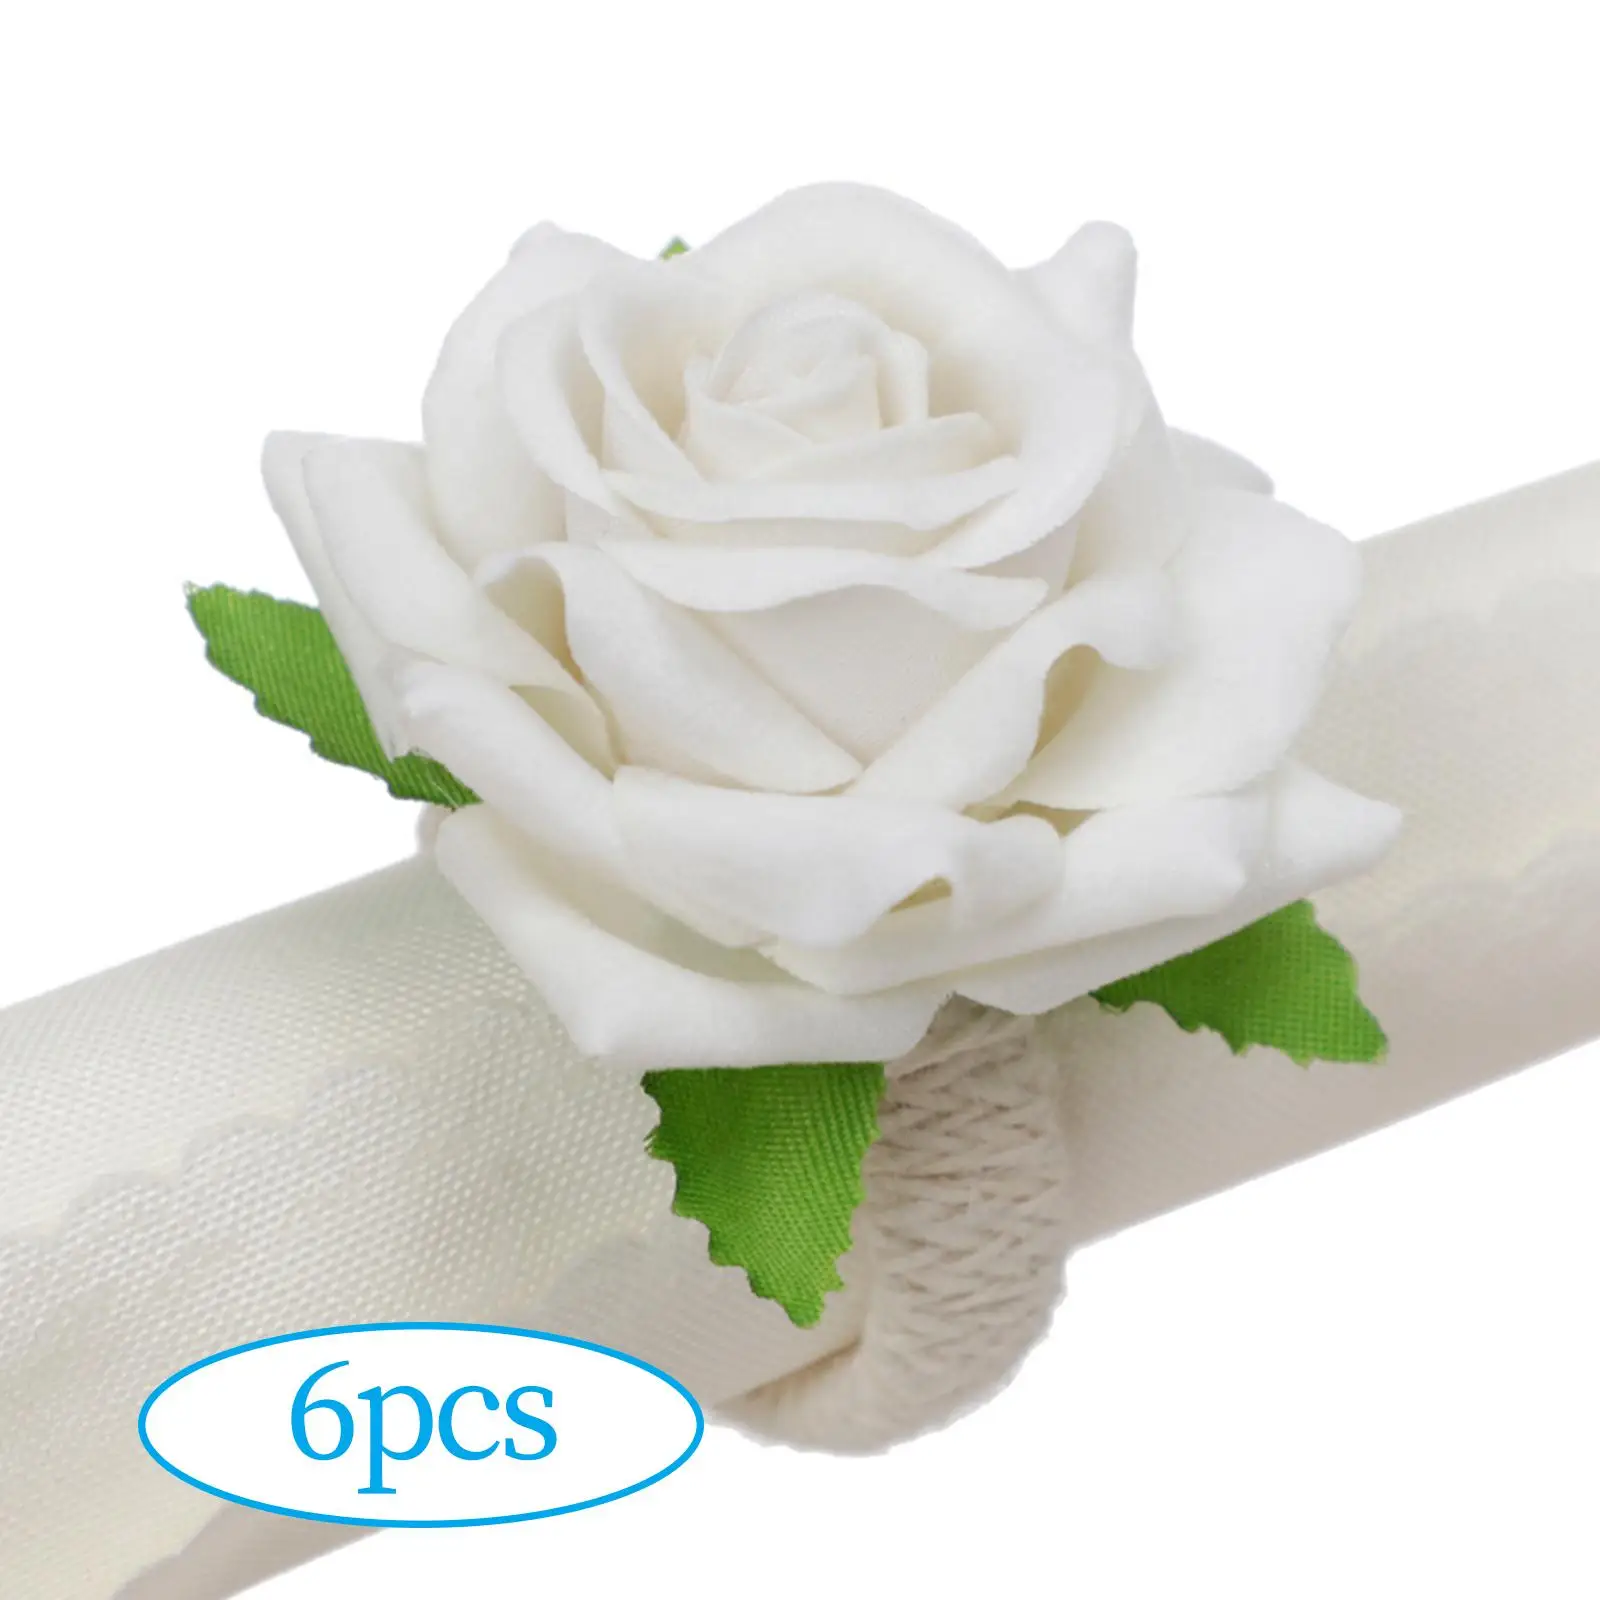 Handmade Rose Flowers Napkin Rings Napkin Holder Serviette Buckles Holder for Hotel Kitchen Wedding Party Decor